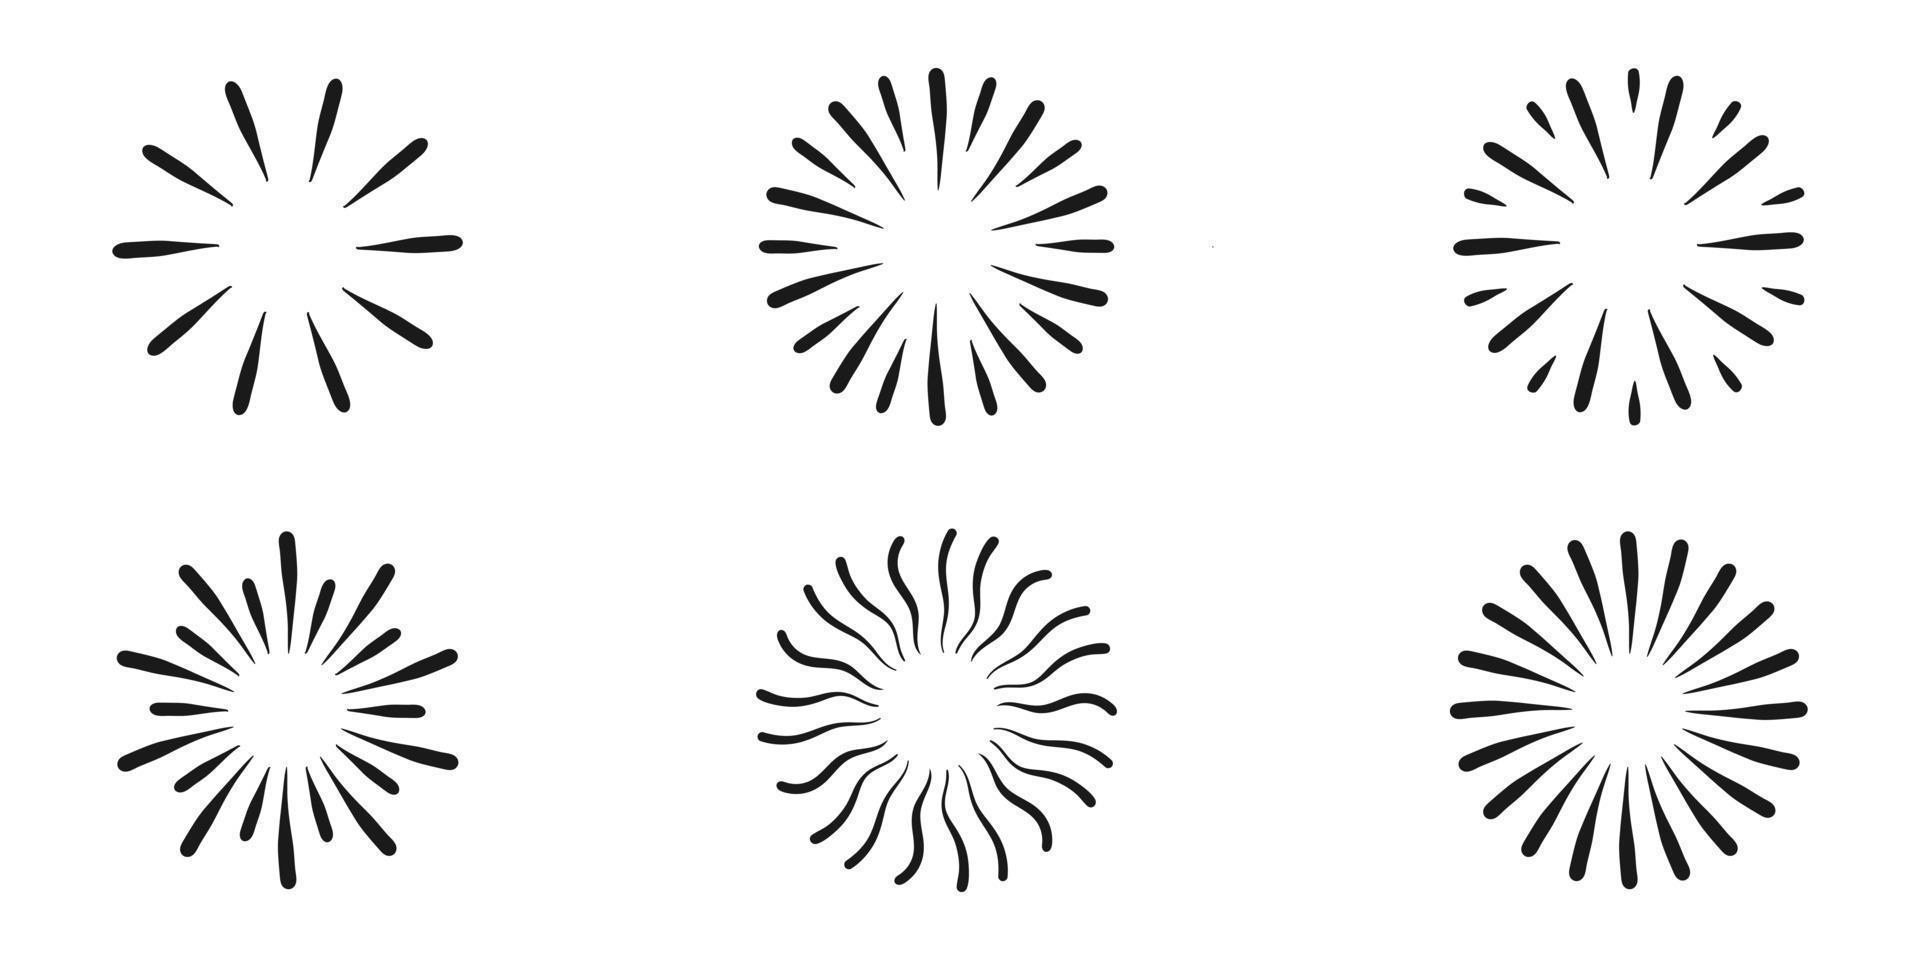 solens strålar ikon i svarta linjer. vektor illustration av handritad skiss av glödande cirkel.